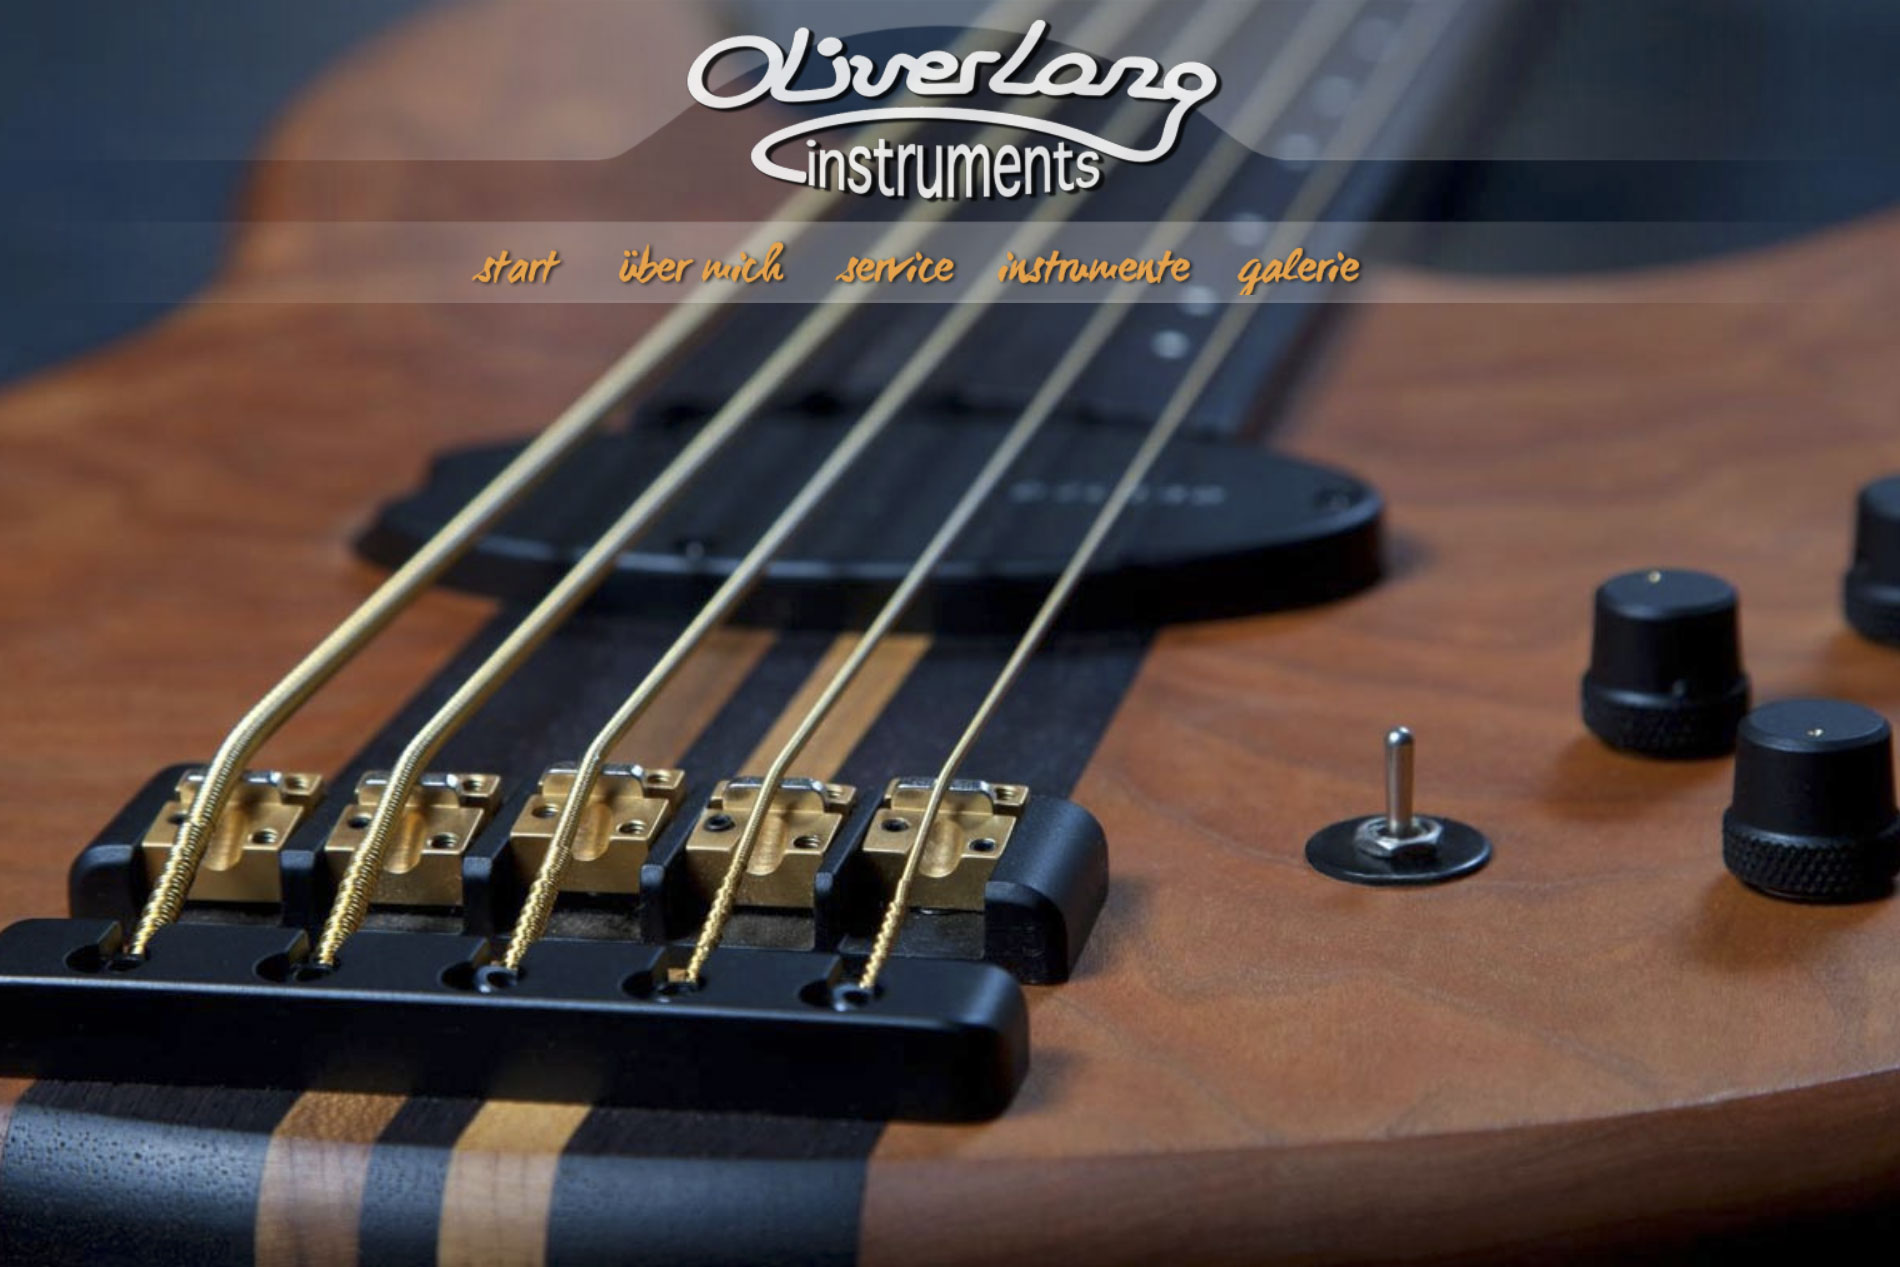 Website Oliver Lang Instruments | Eckstedt